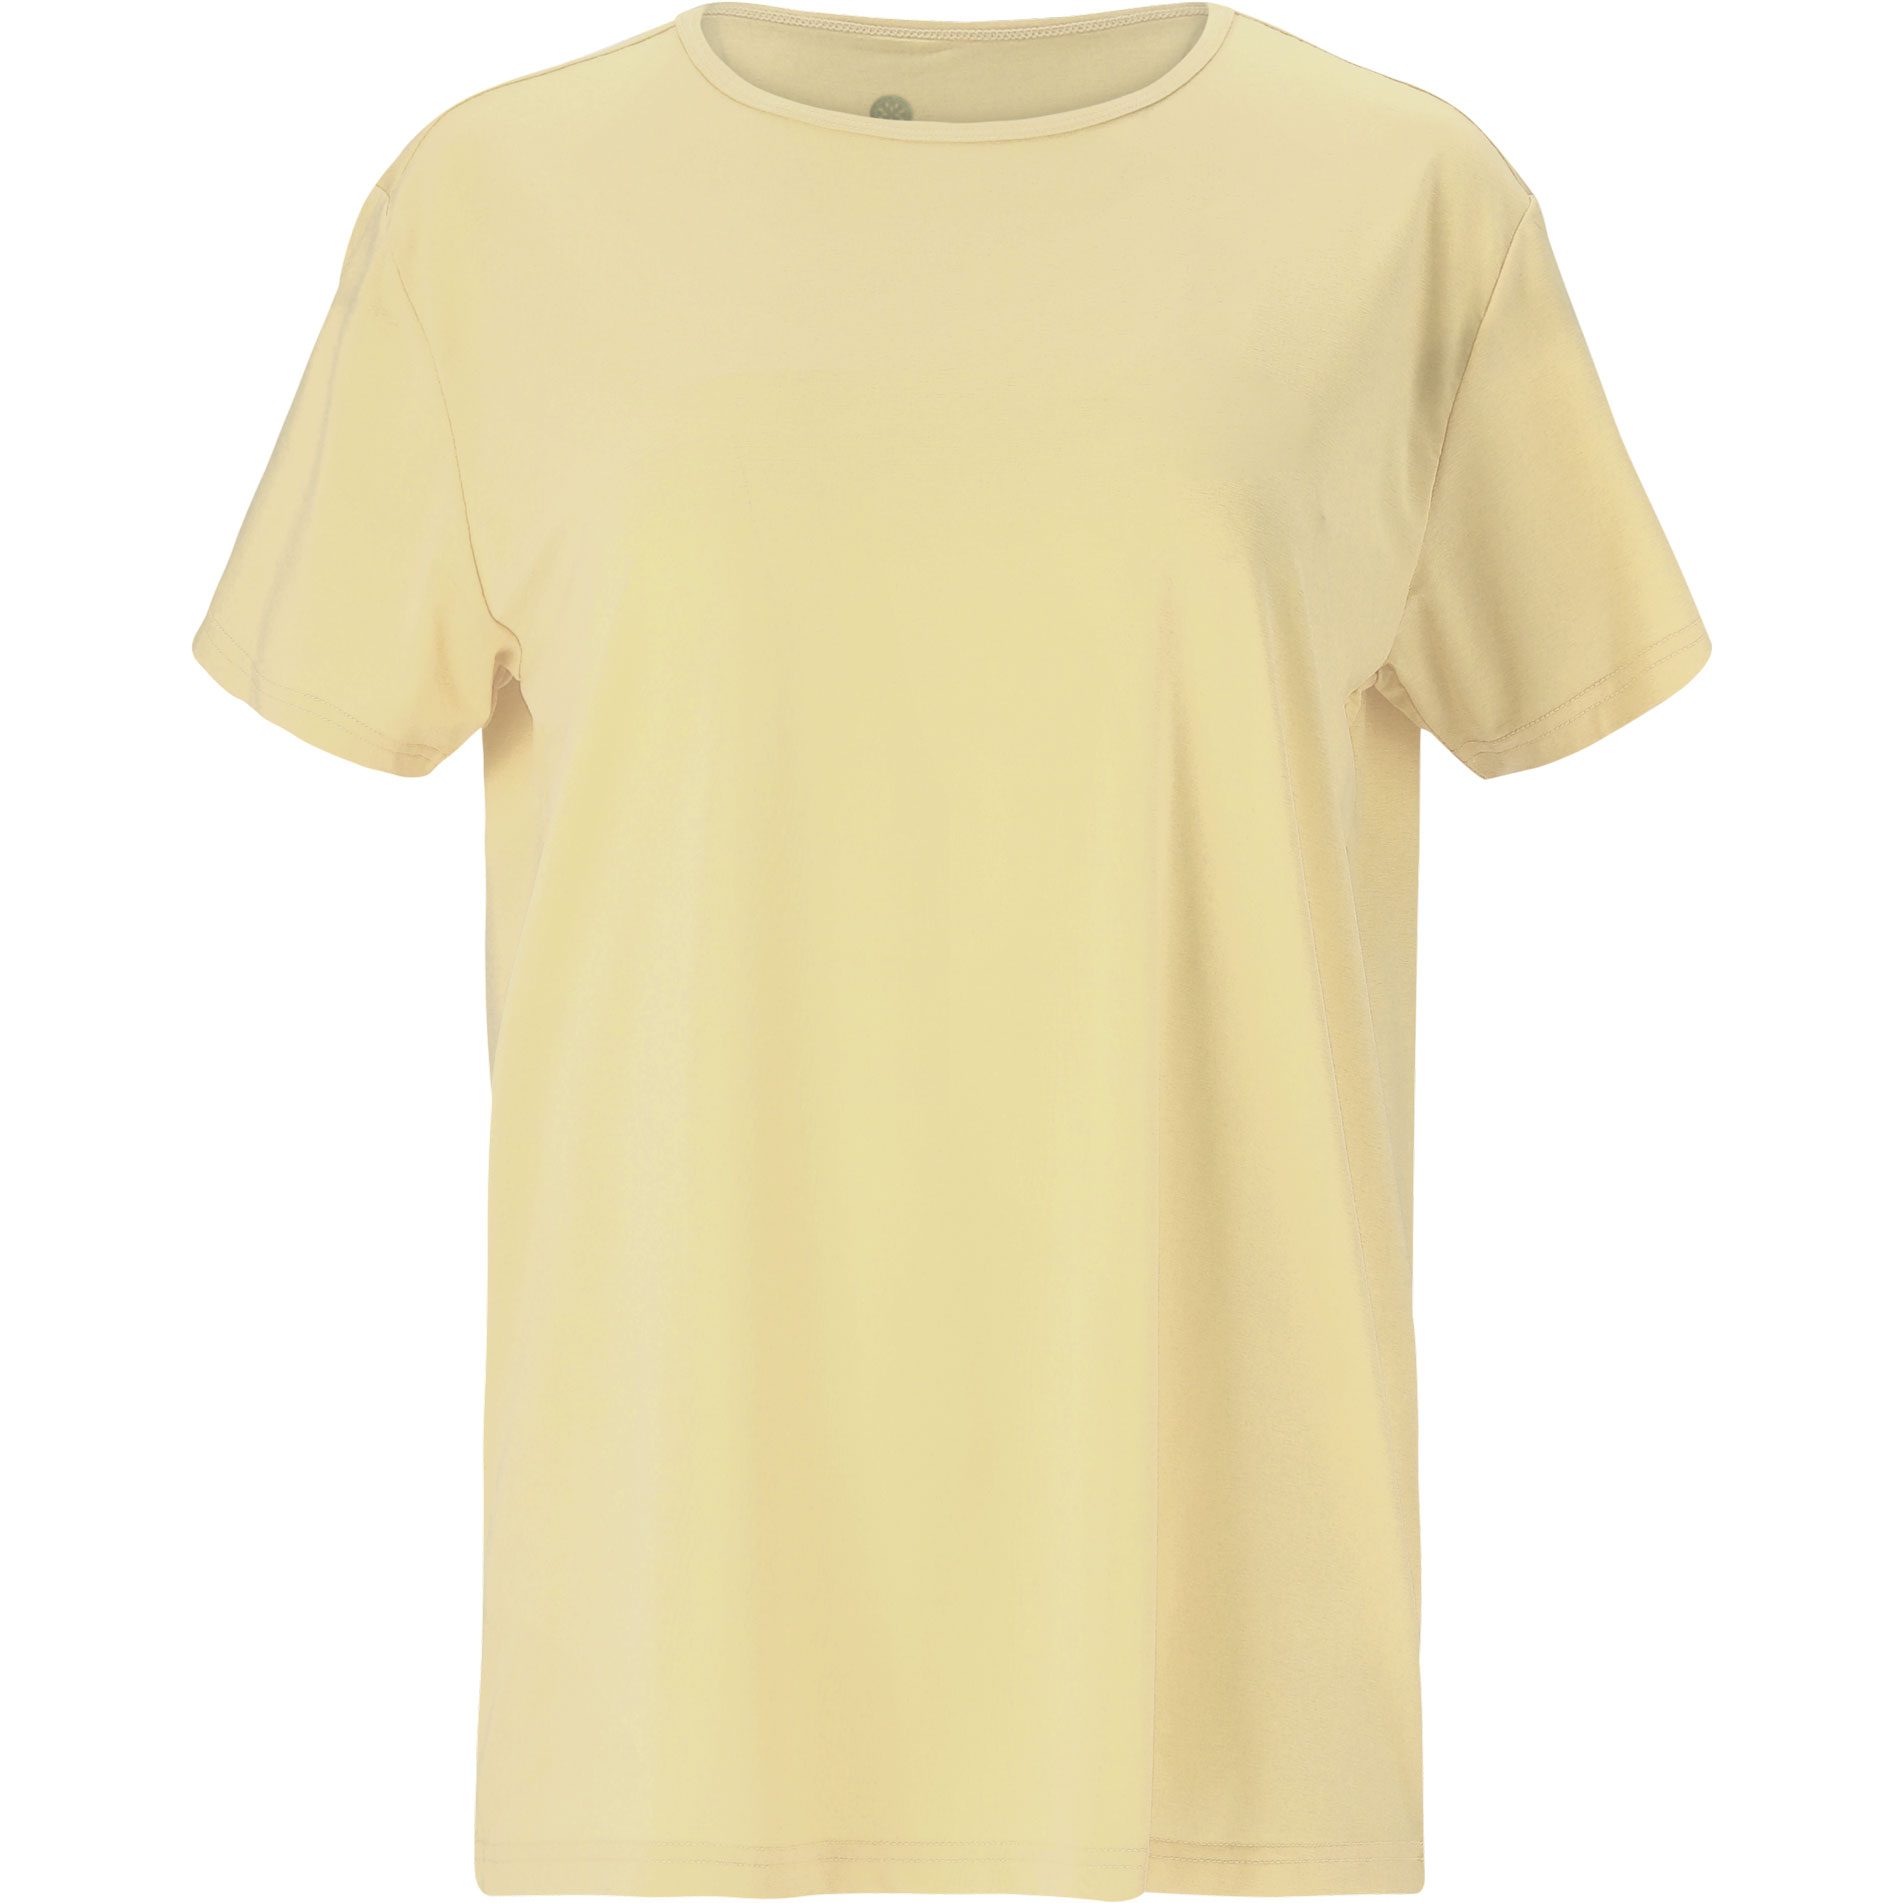 Athlecia - Lizzy W Slub T-Shirt Damen lemon icing kaufen im Sport Bittl Shop